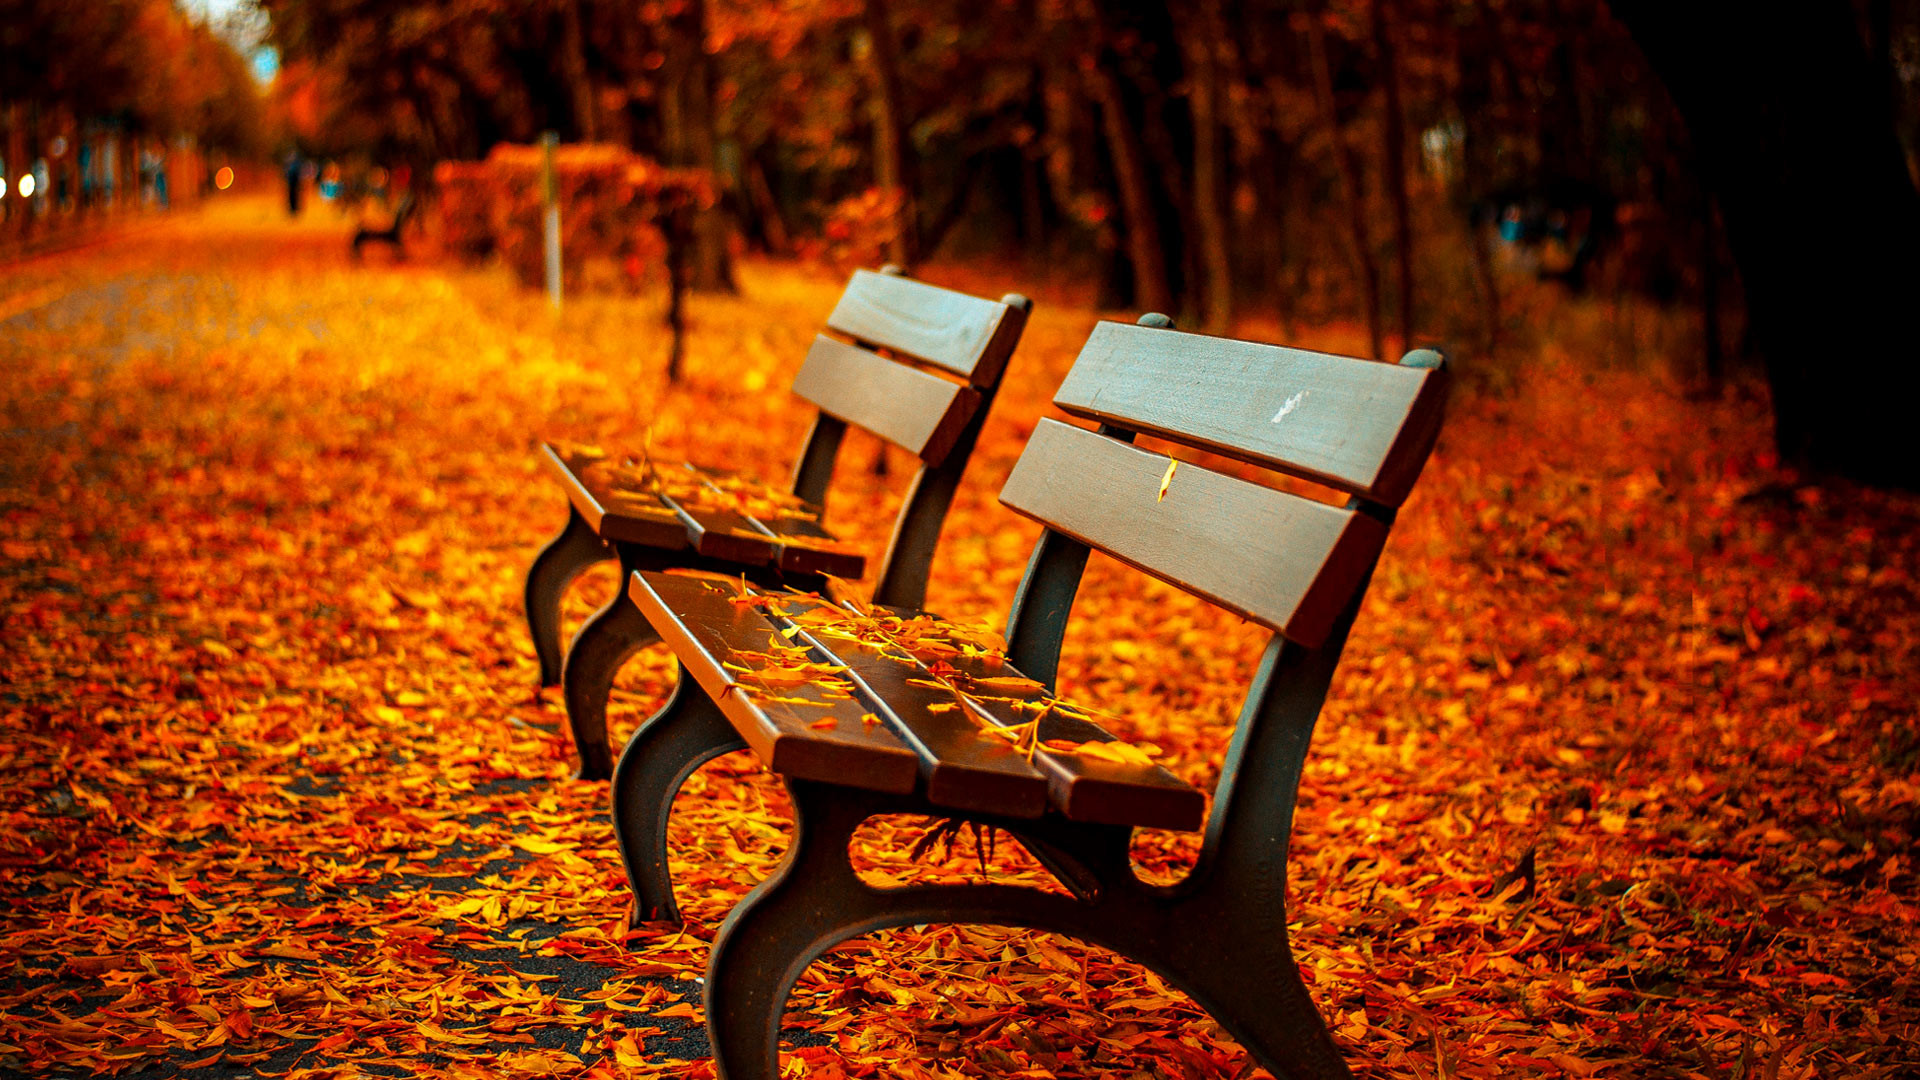 Fall Scenery Wallpapers Free Download | PixelsTalk.Net